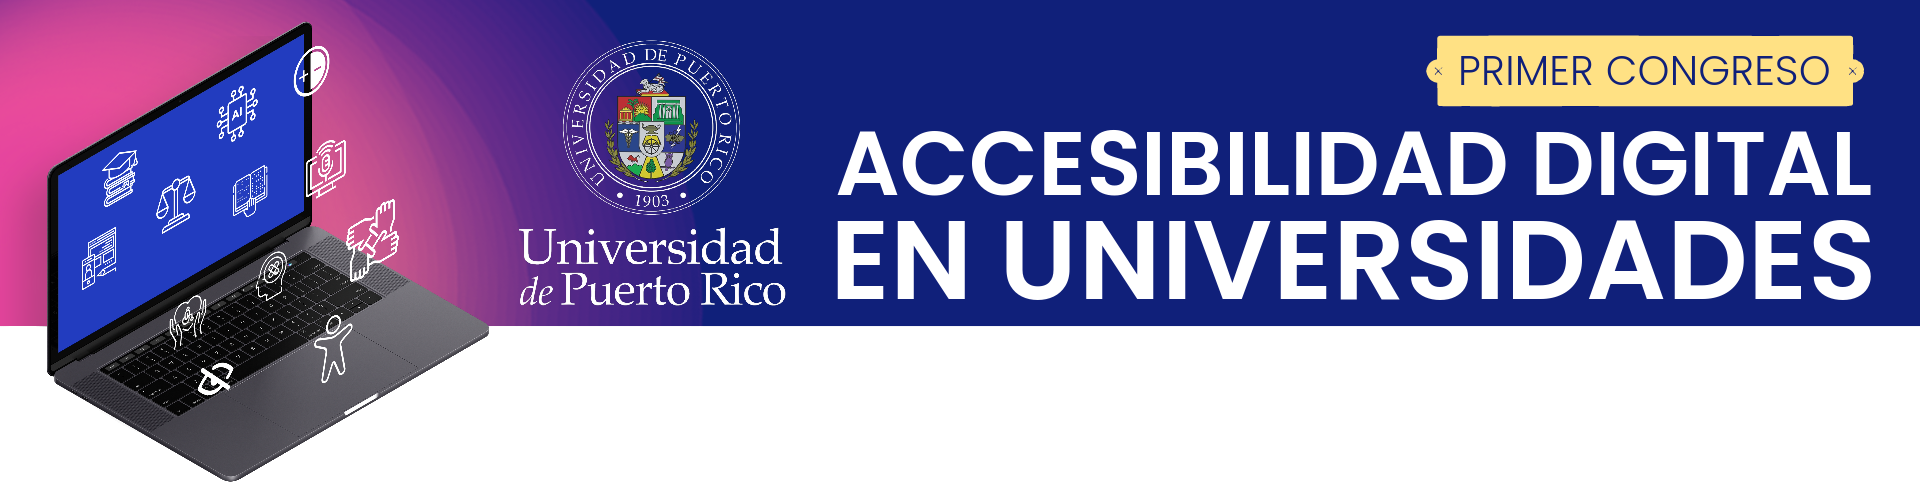 Imagen que usado como Banner con el título: Primer Congreso Accesibilidad Digital en Universidades. Contiene una computadora portátil abierta con varios iconos flotando, representando: educación, inteligencia artificial, contraste, ayuda auditiva, igualdad, unión, entre otros. Incluído en el banner tambien está el logo de La Universidad de Puerto Rico.